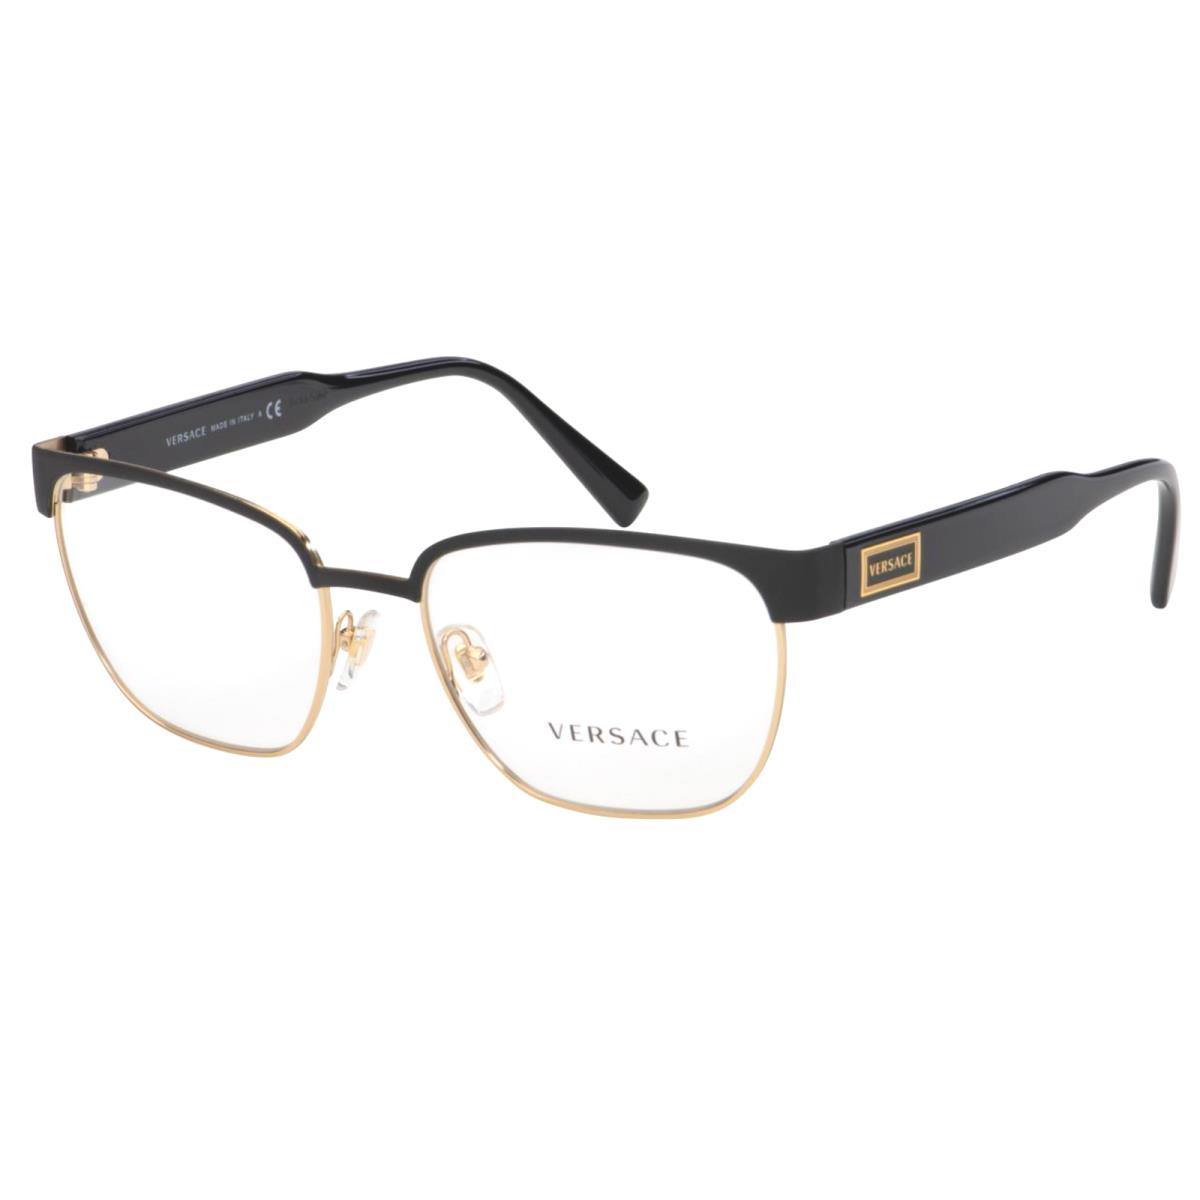 Versace Reading Glasses Mod. 1264 1436 54-18 140 Black Gold Frames Readers